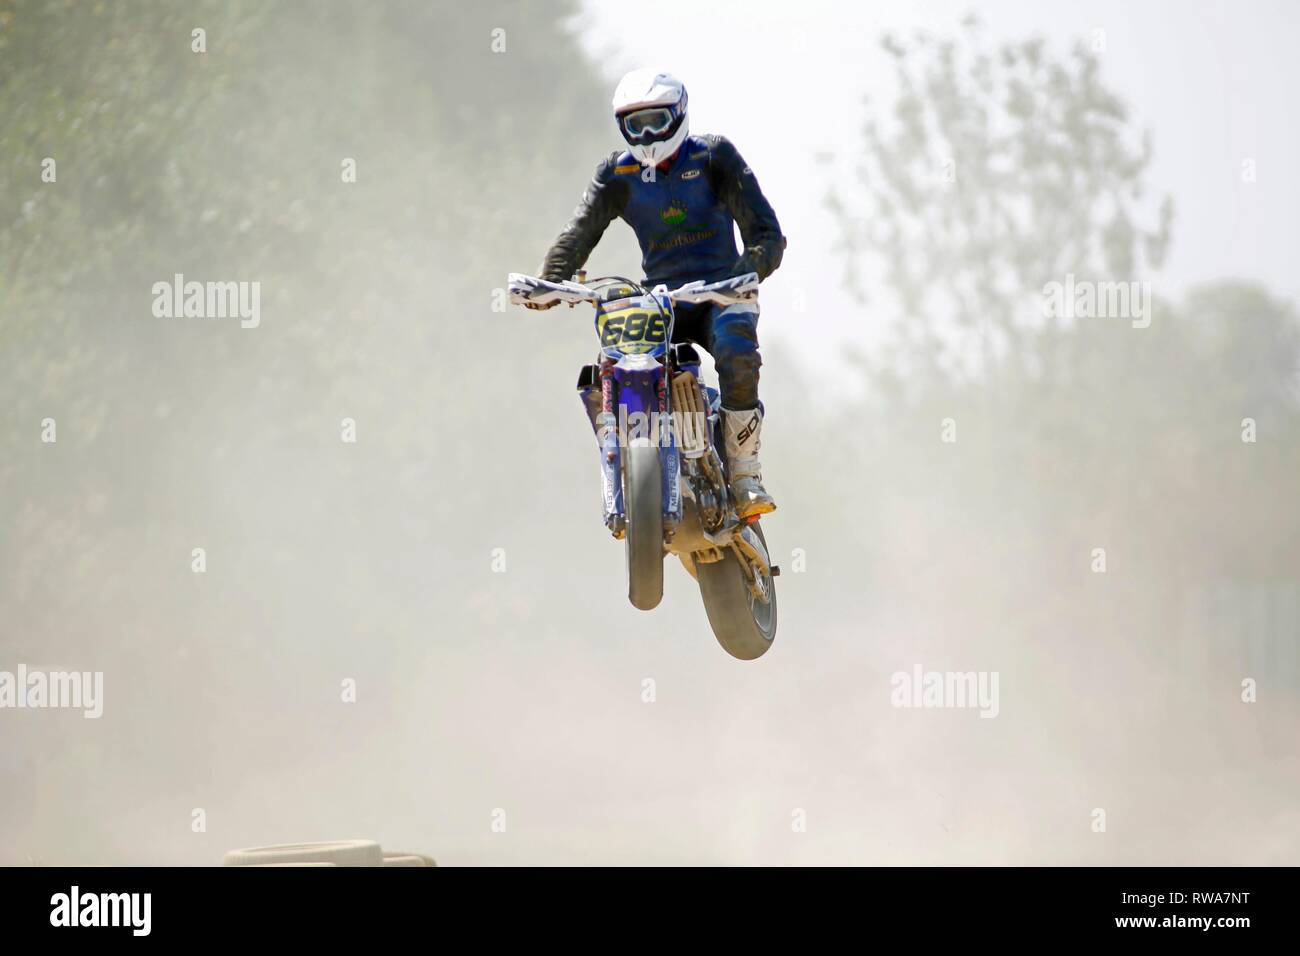 Dans l'air, moto course de moto avec des obstacles, République Tchèque Banque D'Images